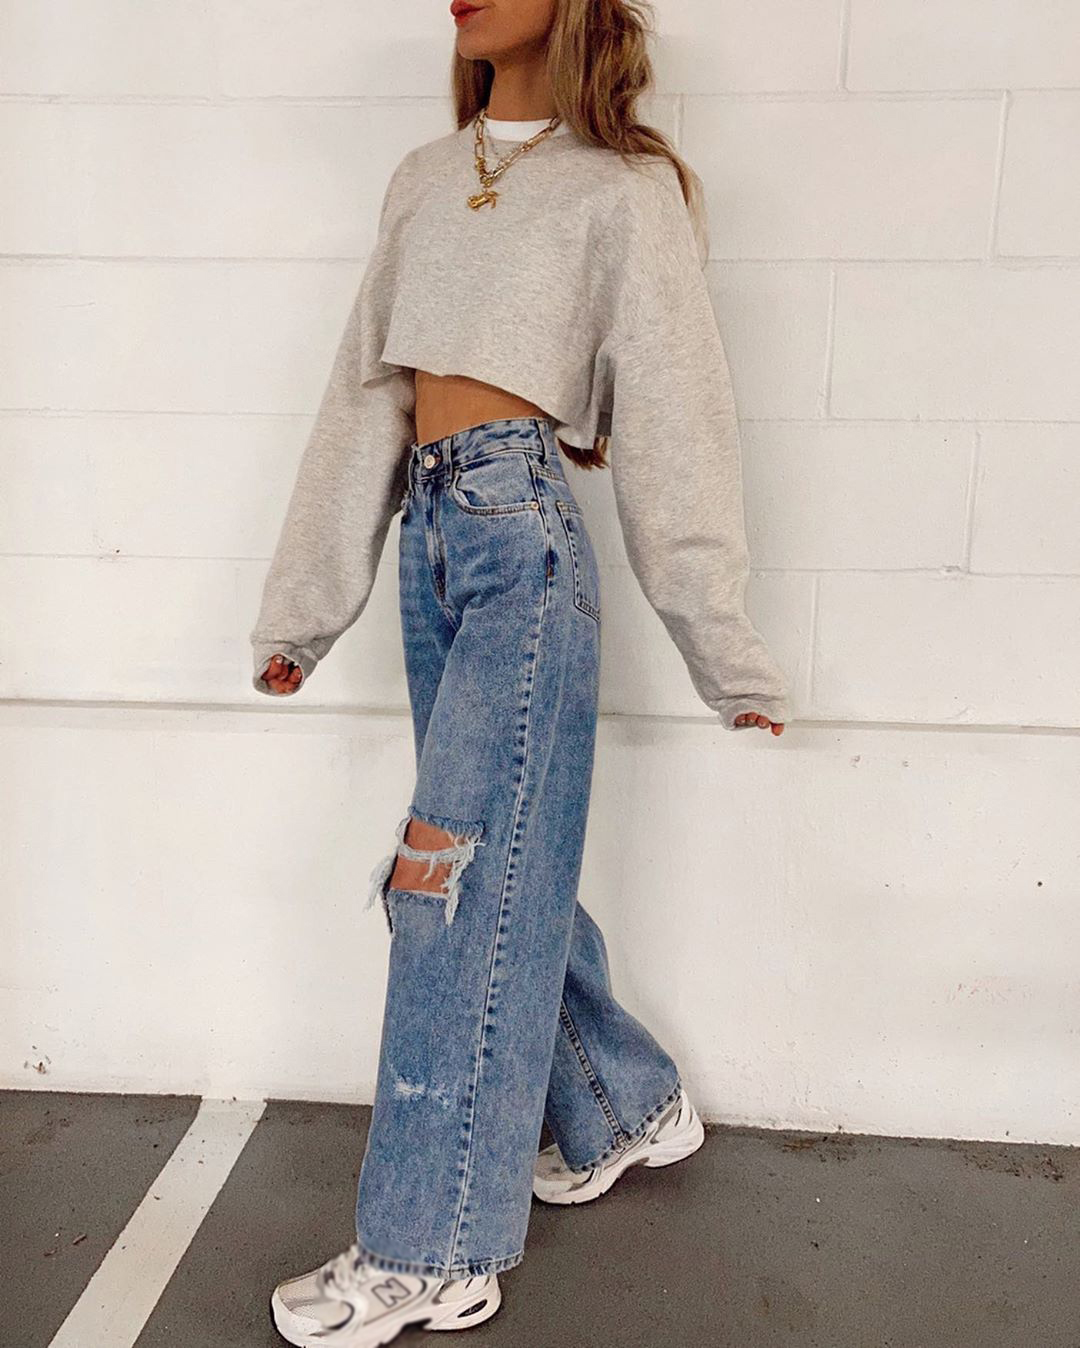 baggy jeans women